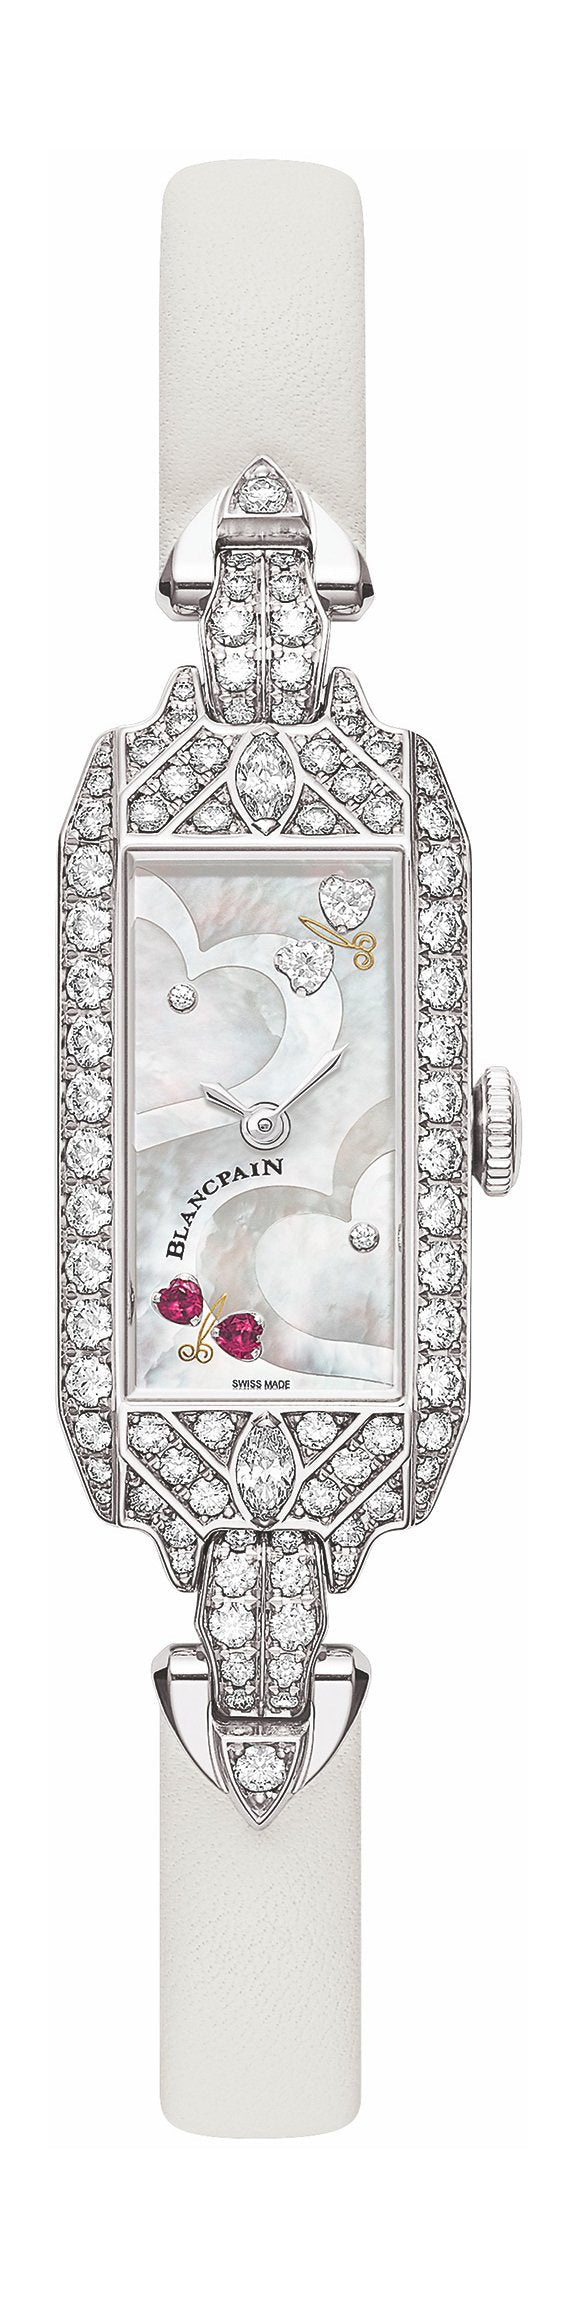 Blancpain Saint-Valentin 2020 Woman's watch 0091 19R54 63A